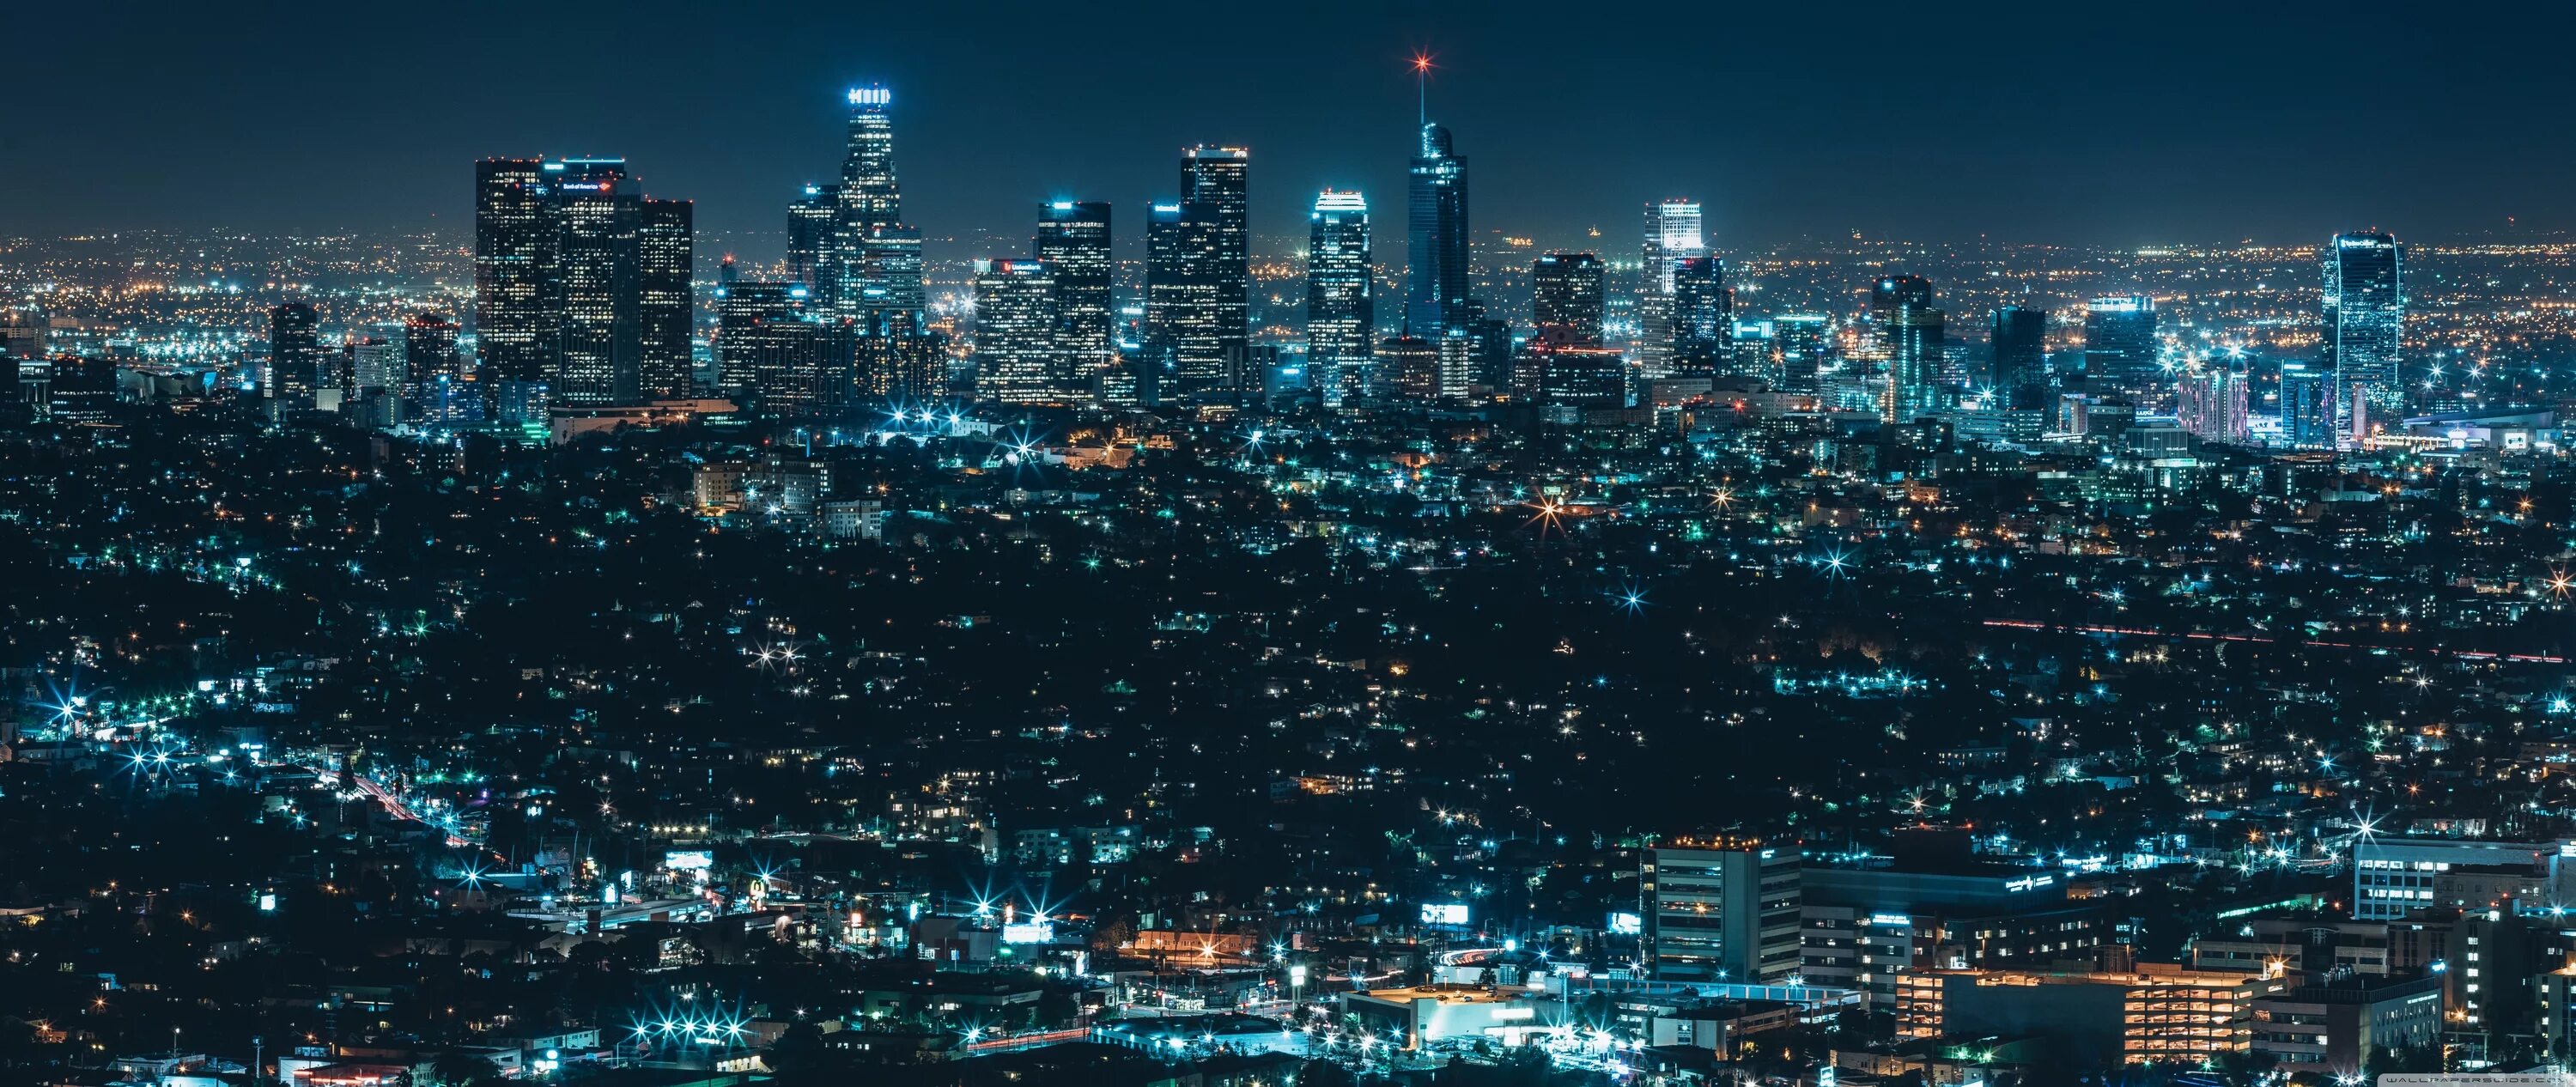 Обои 21 9 Ultrawide 4k. Ночной Лос Анджелес. Панорама ночного города. Картинки на рабочий стол. 21 9 fix